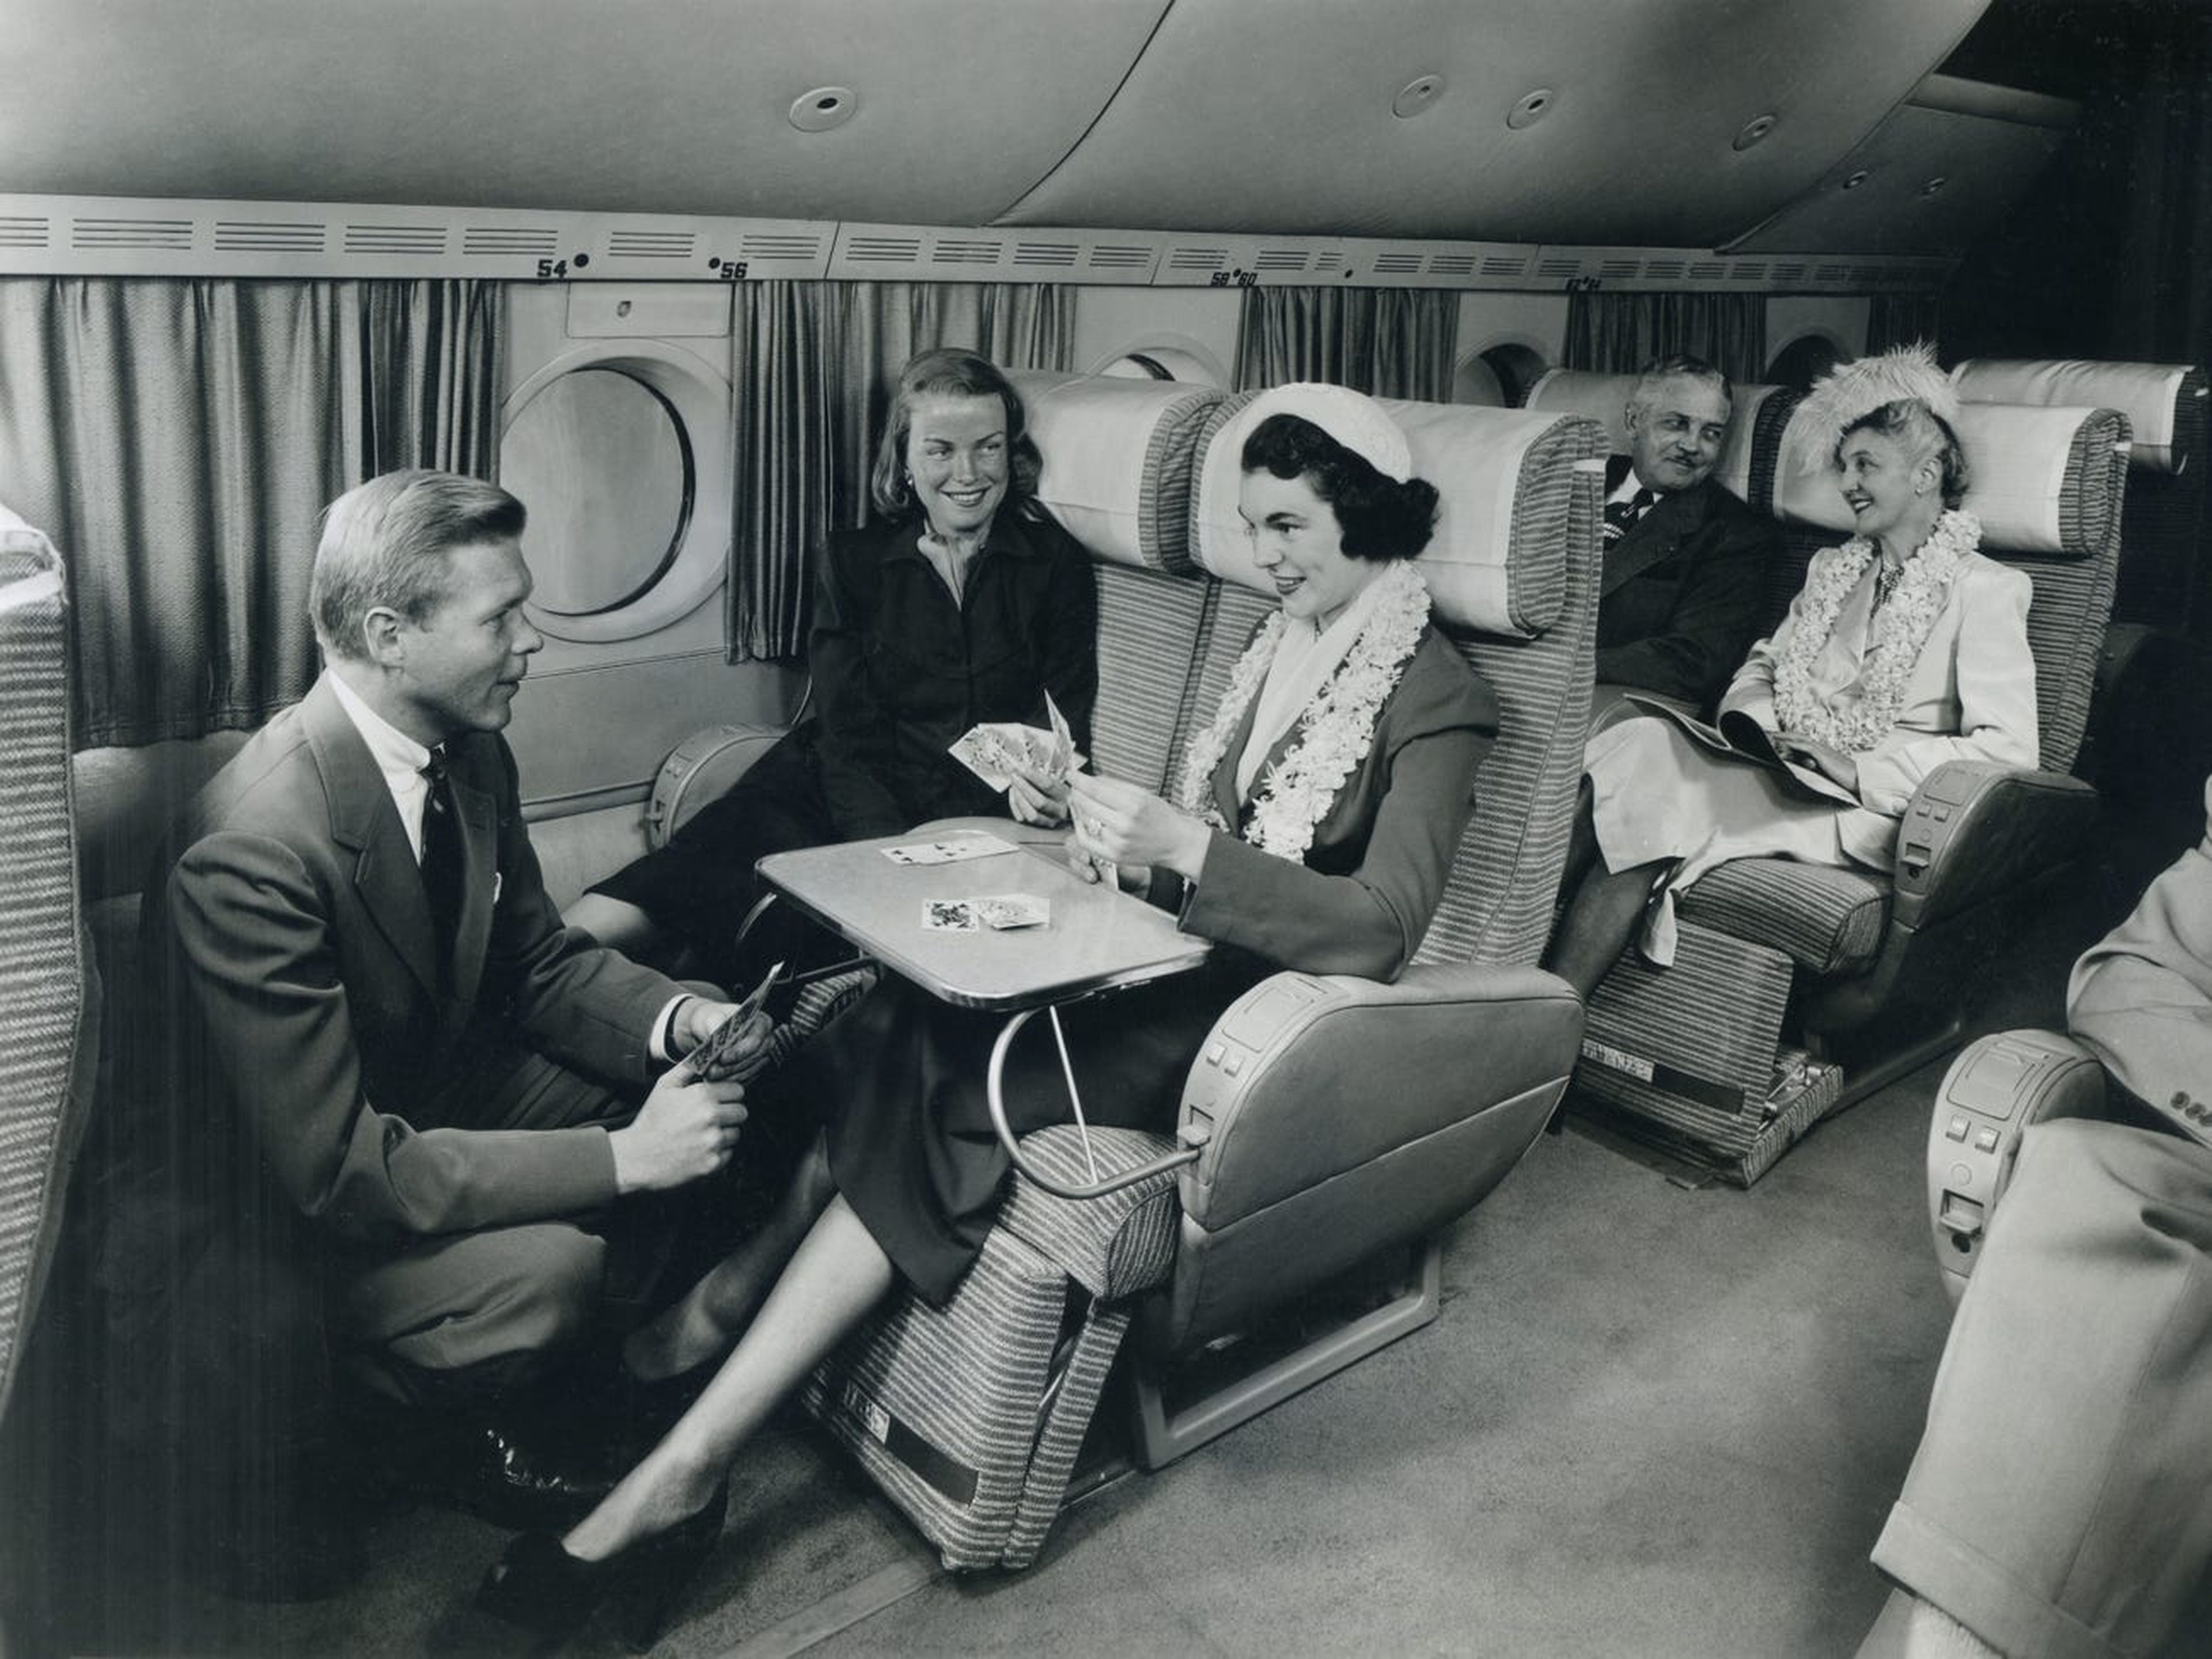 Pasajeros a bordo juegan a las cartas y conversan en un espacioso avión de pasajeros, hacia finales de la década de 1940. 